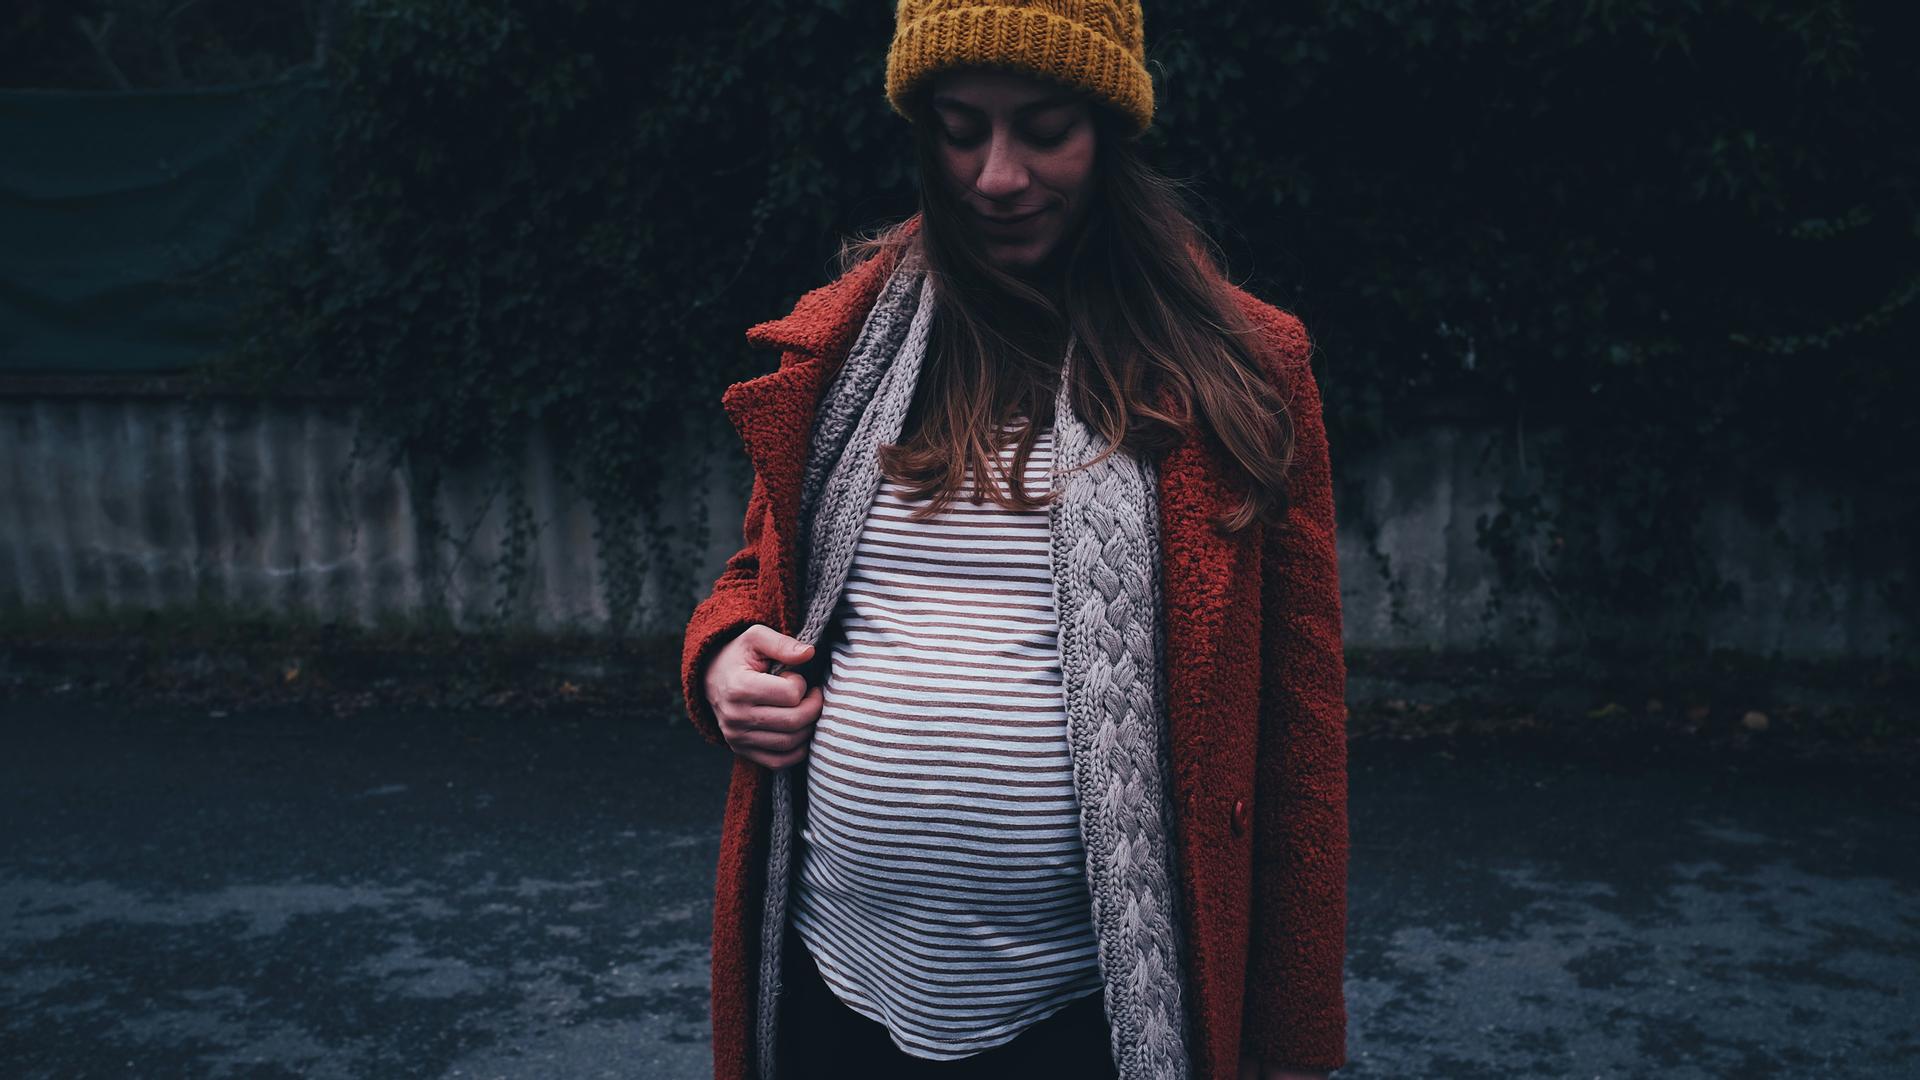 Eine schwangere Frau steht in einer düsteren Umgebung.